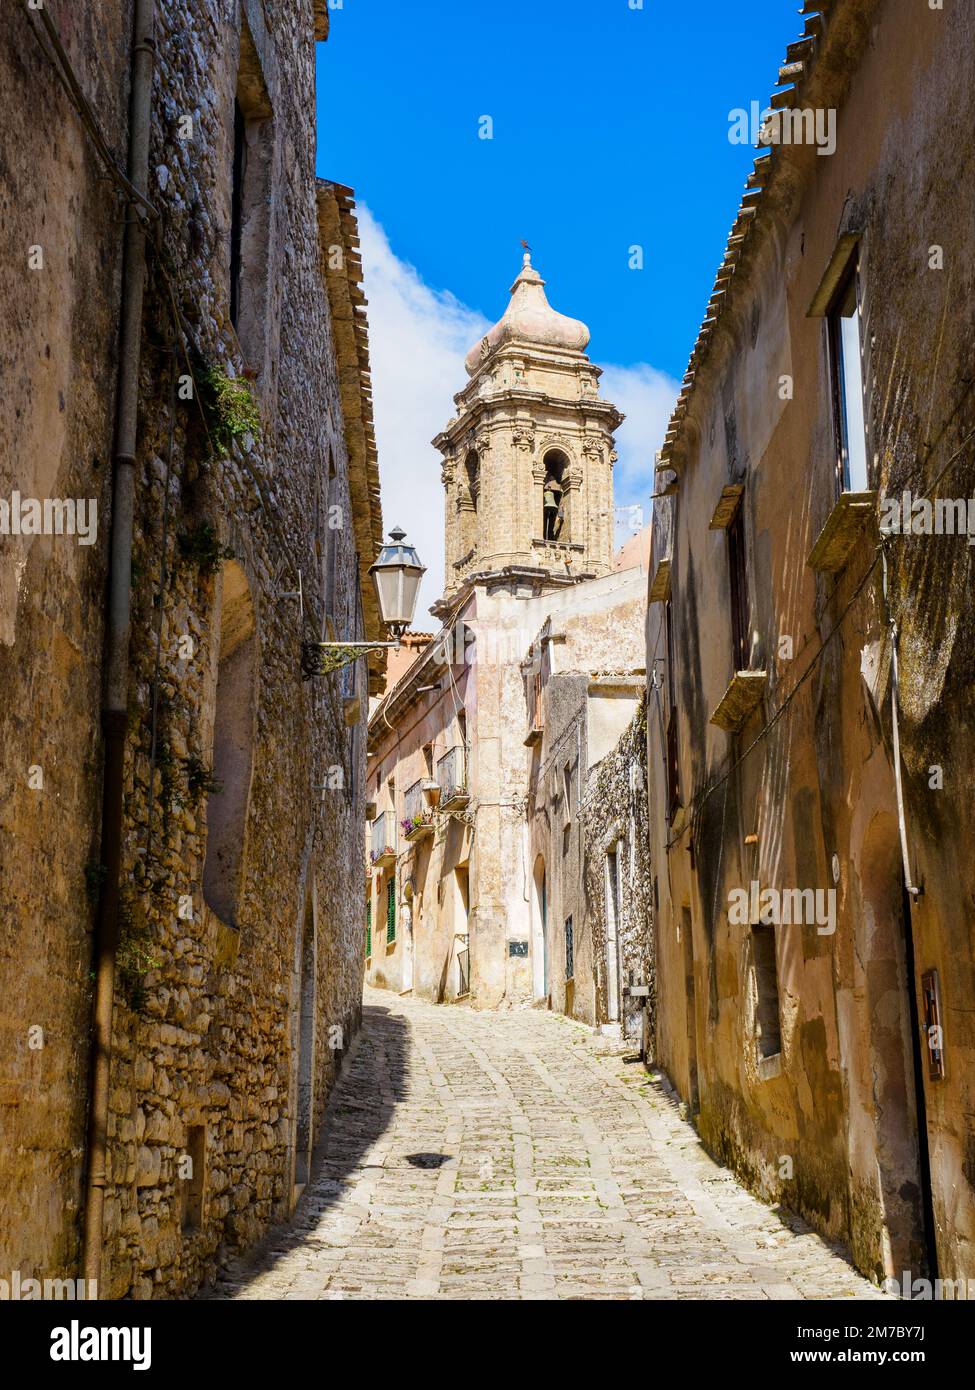 Une rue étroite mène à l'église de San Giuliano dans la ville médiévale d'Erice - Sicile, Italie Banque D'Images